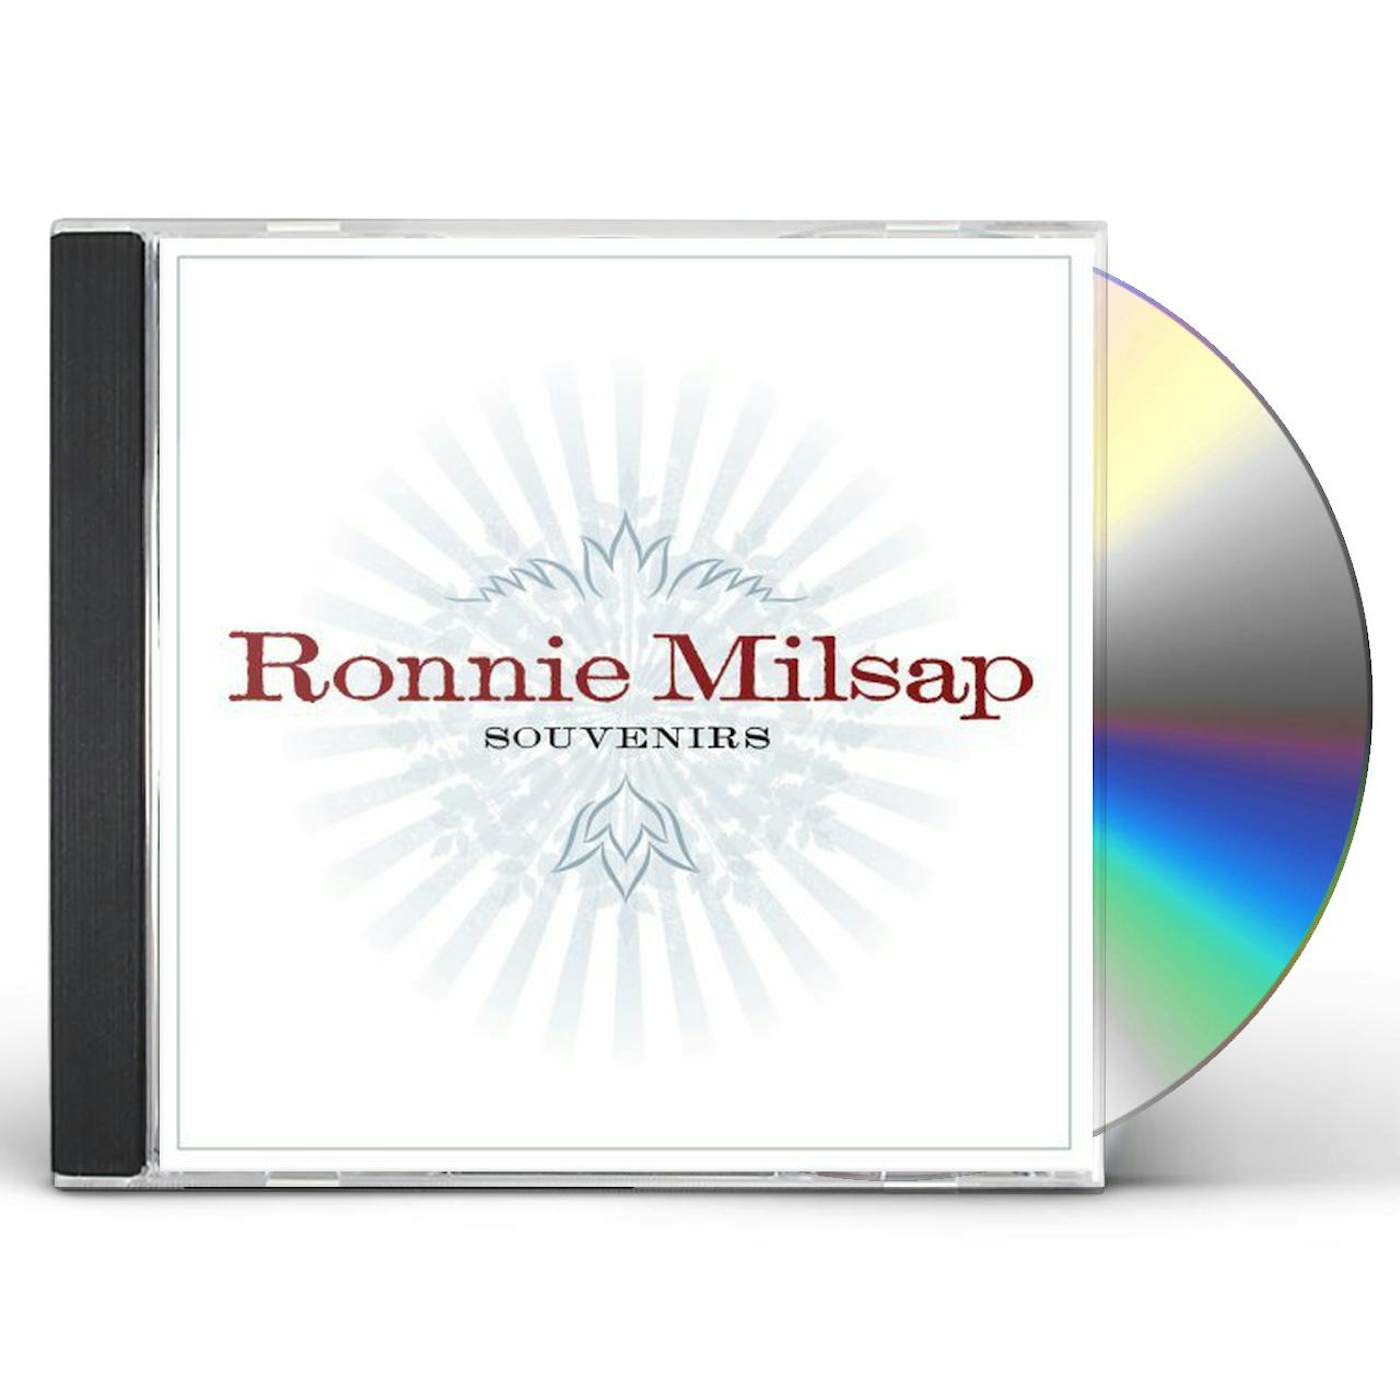 Ronnie Milsap SOUVENIRS CD